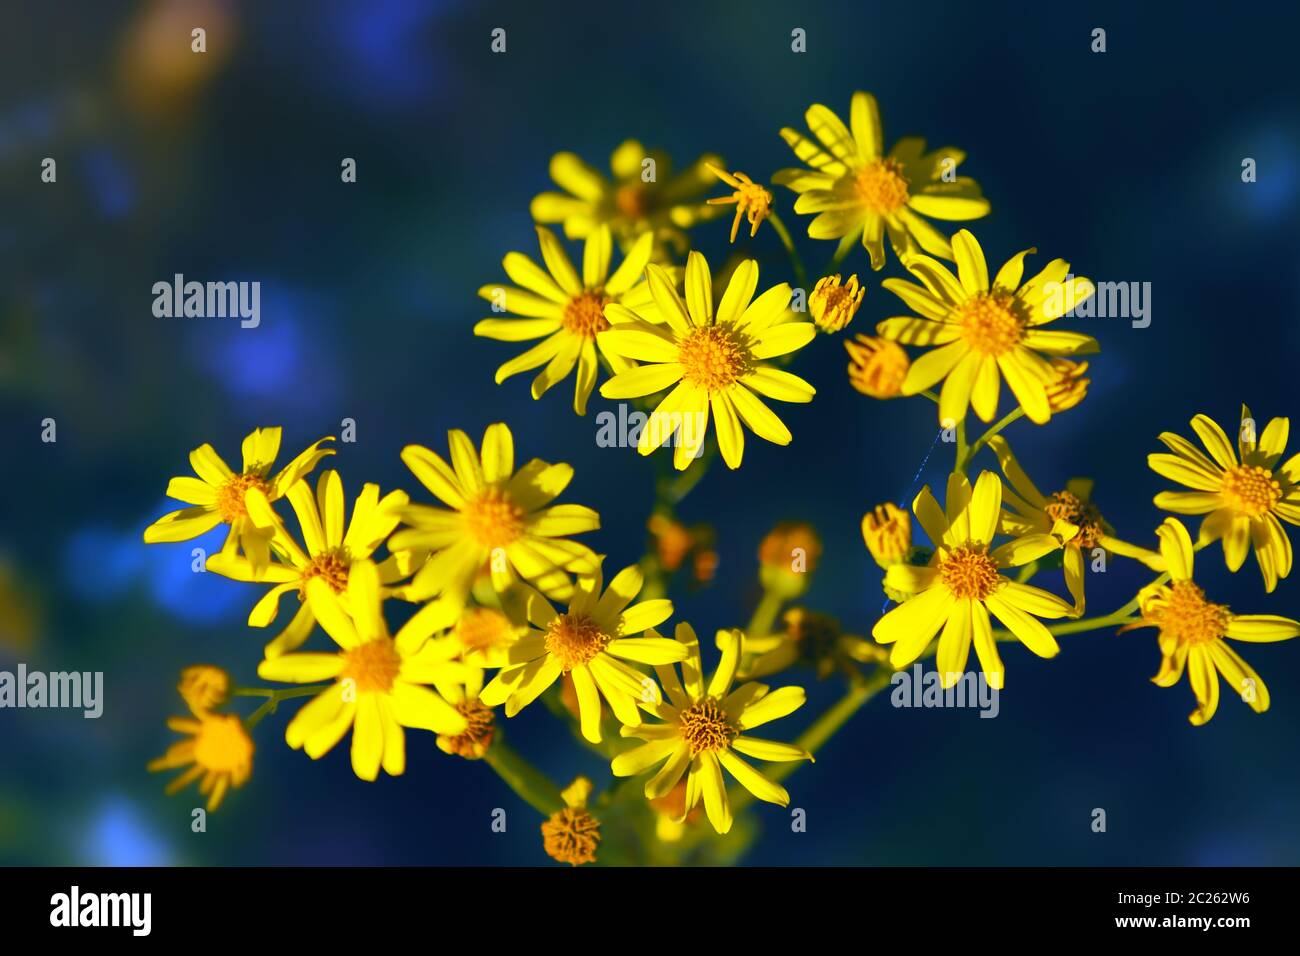 Fleurs sauvages jaunes de forêt - Jacobaea vulgaris ou ragwort - gros plan sur un fond bleu foncé. Mise au point sélective, filtre flou. Banque D'Images